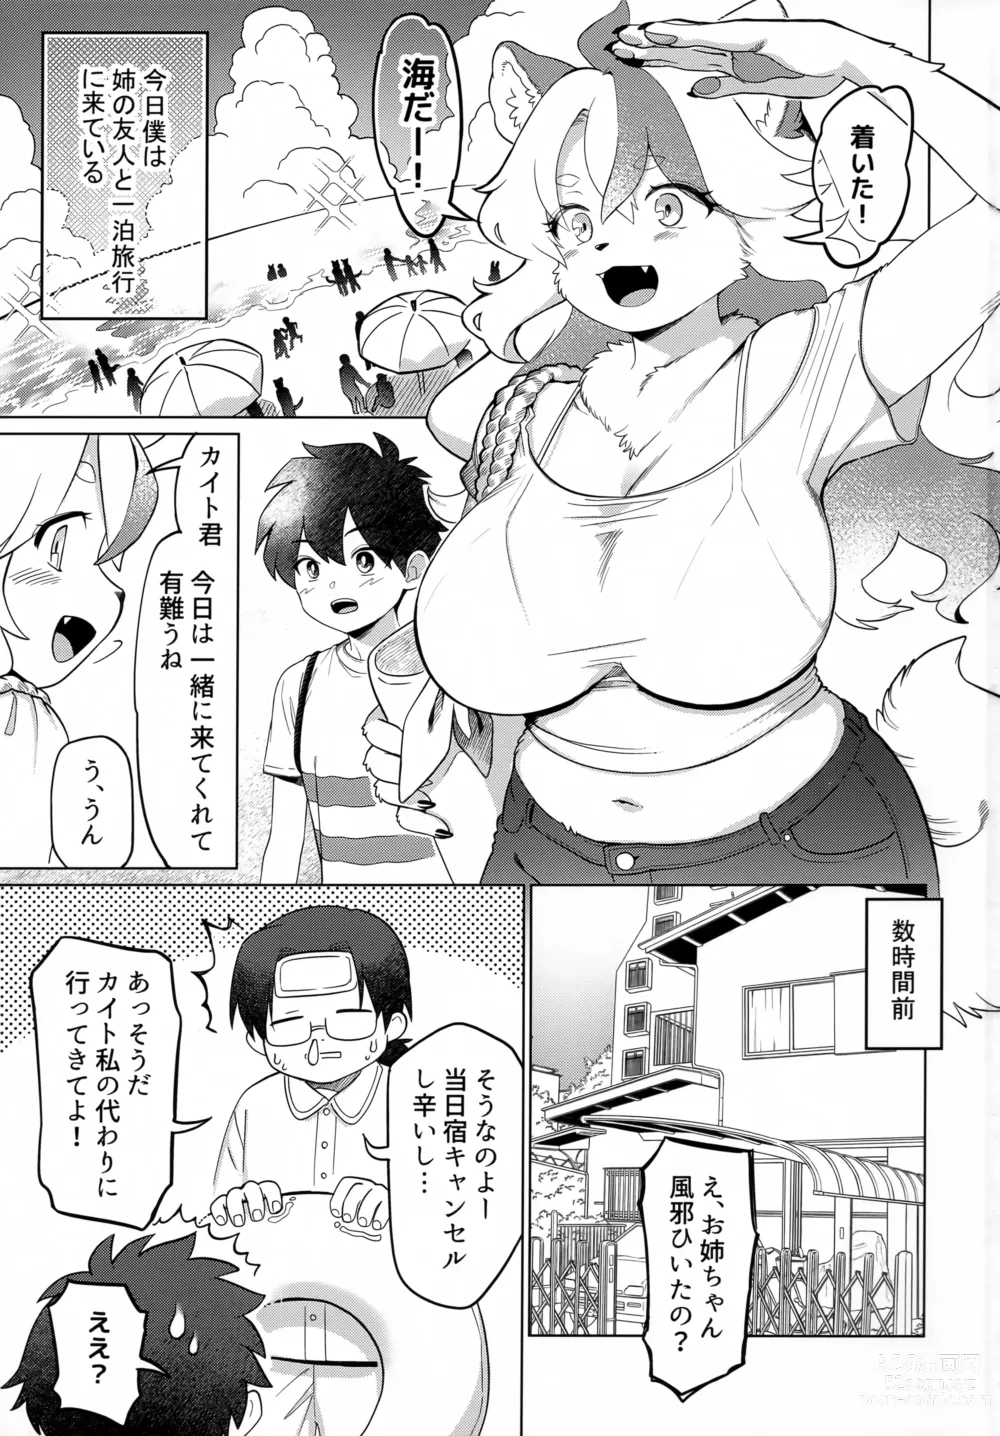 Page 2 of doujinshi Nami no Ne ga Oshiete Kureta Koto